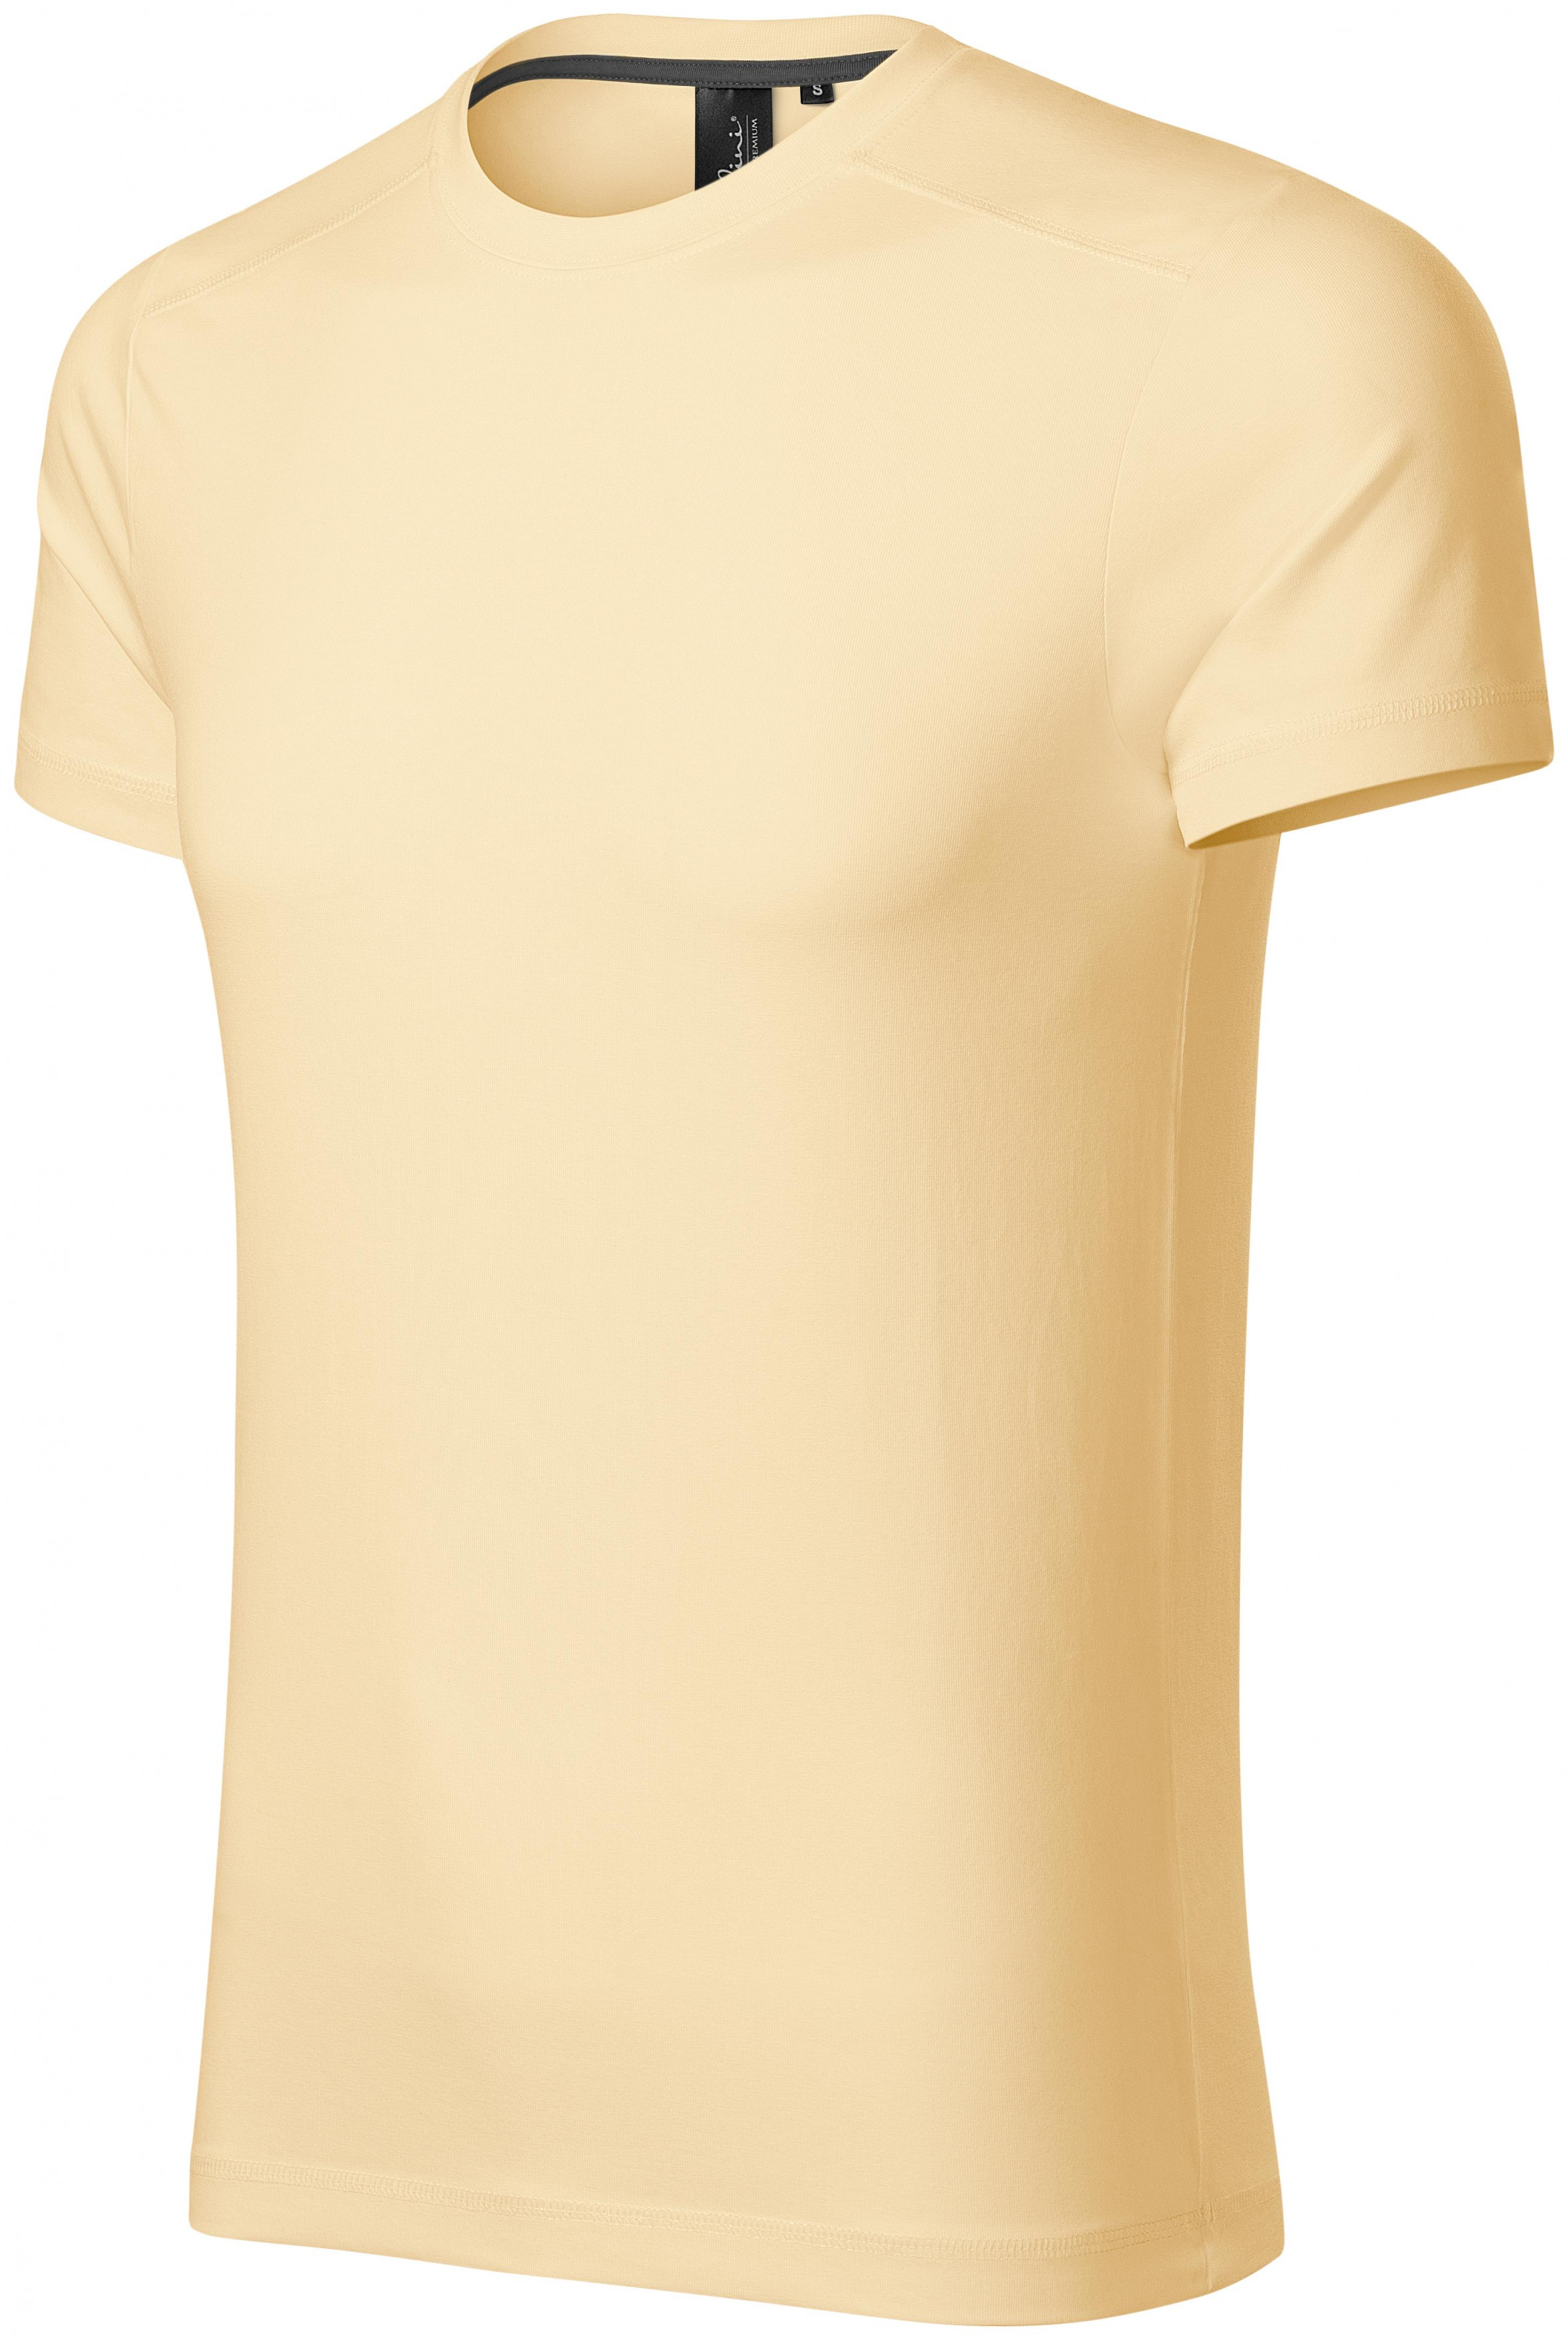 Pánske tričko ozdobené, vanilková, 2XL